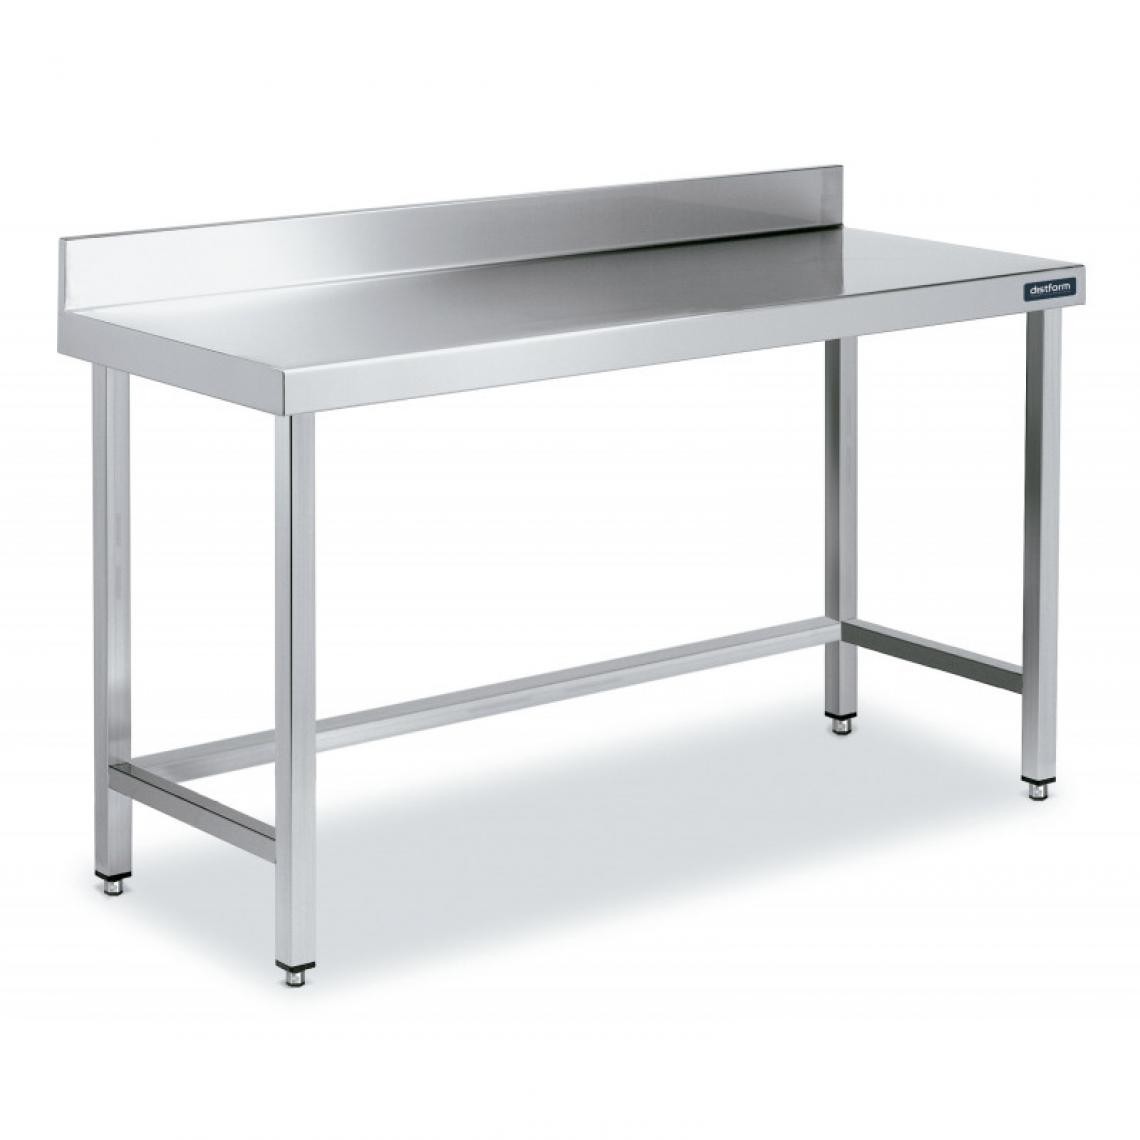 DISTFORM - Table Inox de Travail avec Dosseret Gamme 800 - Distform - Acier inoxydable600x800 - Tables à manger